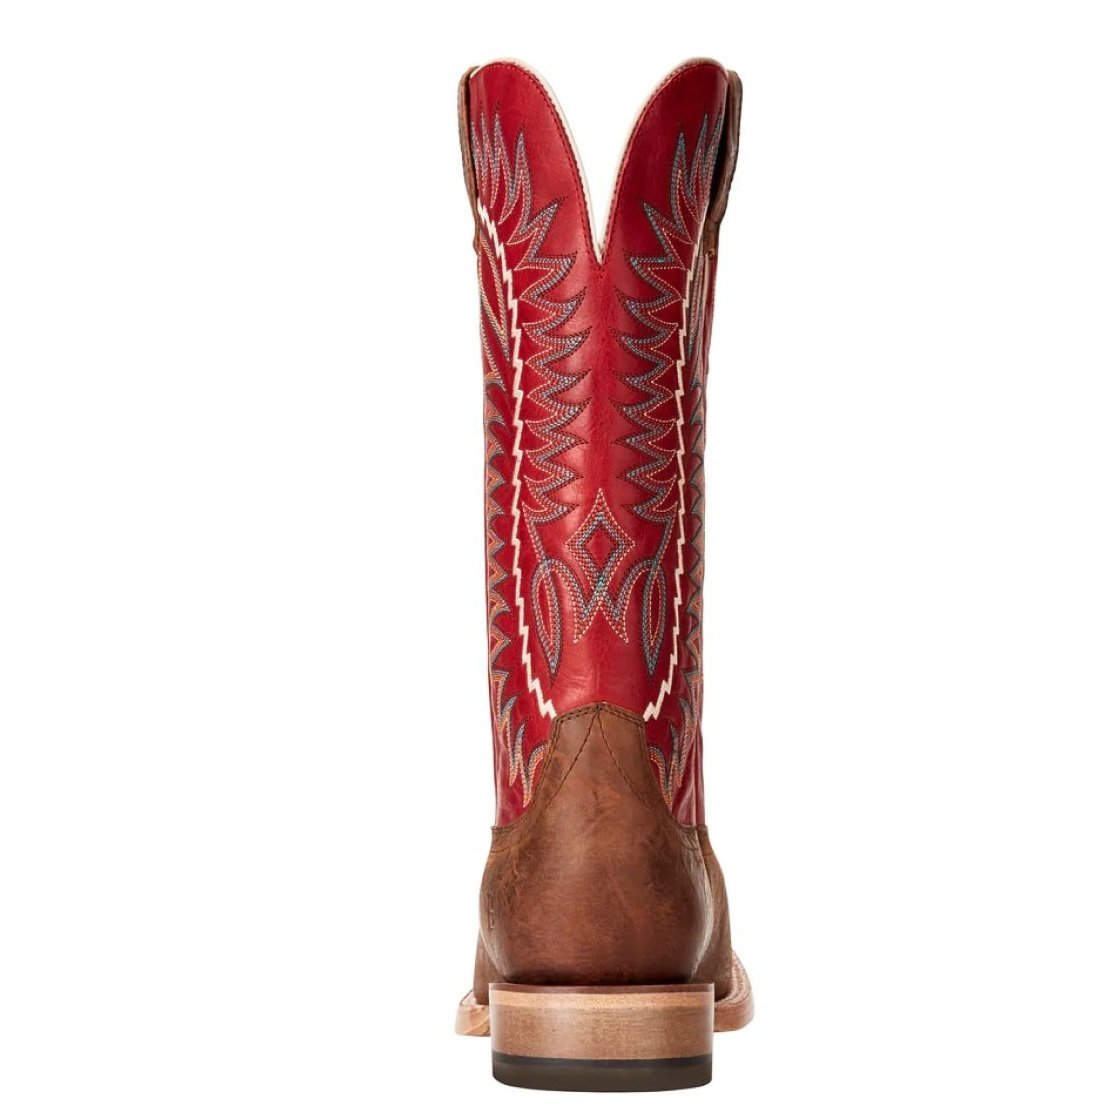 Ariat Men's Cowboy Boots 12" Relentless Elite Walking Heel Red or Black